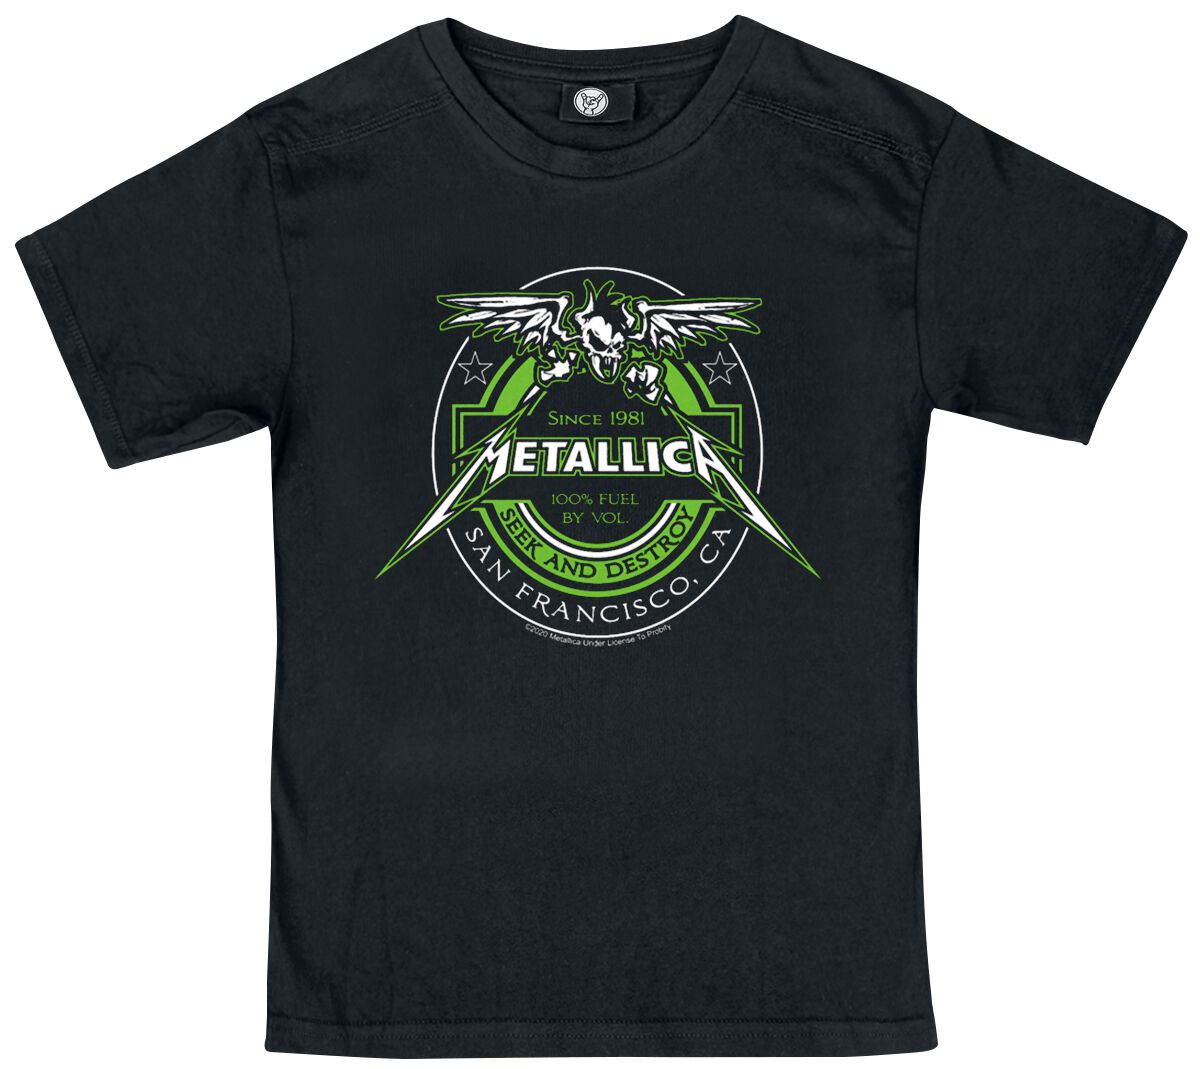 Metallica T-Shirt für Kinder - Metal-Kids - Fuel - für Mädchen & Jungen - schwarz  - Lizenziertes Merchandise!